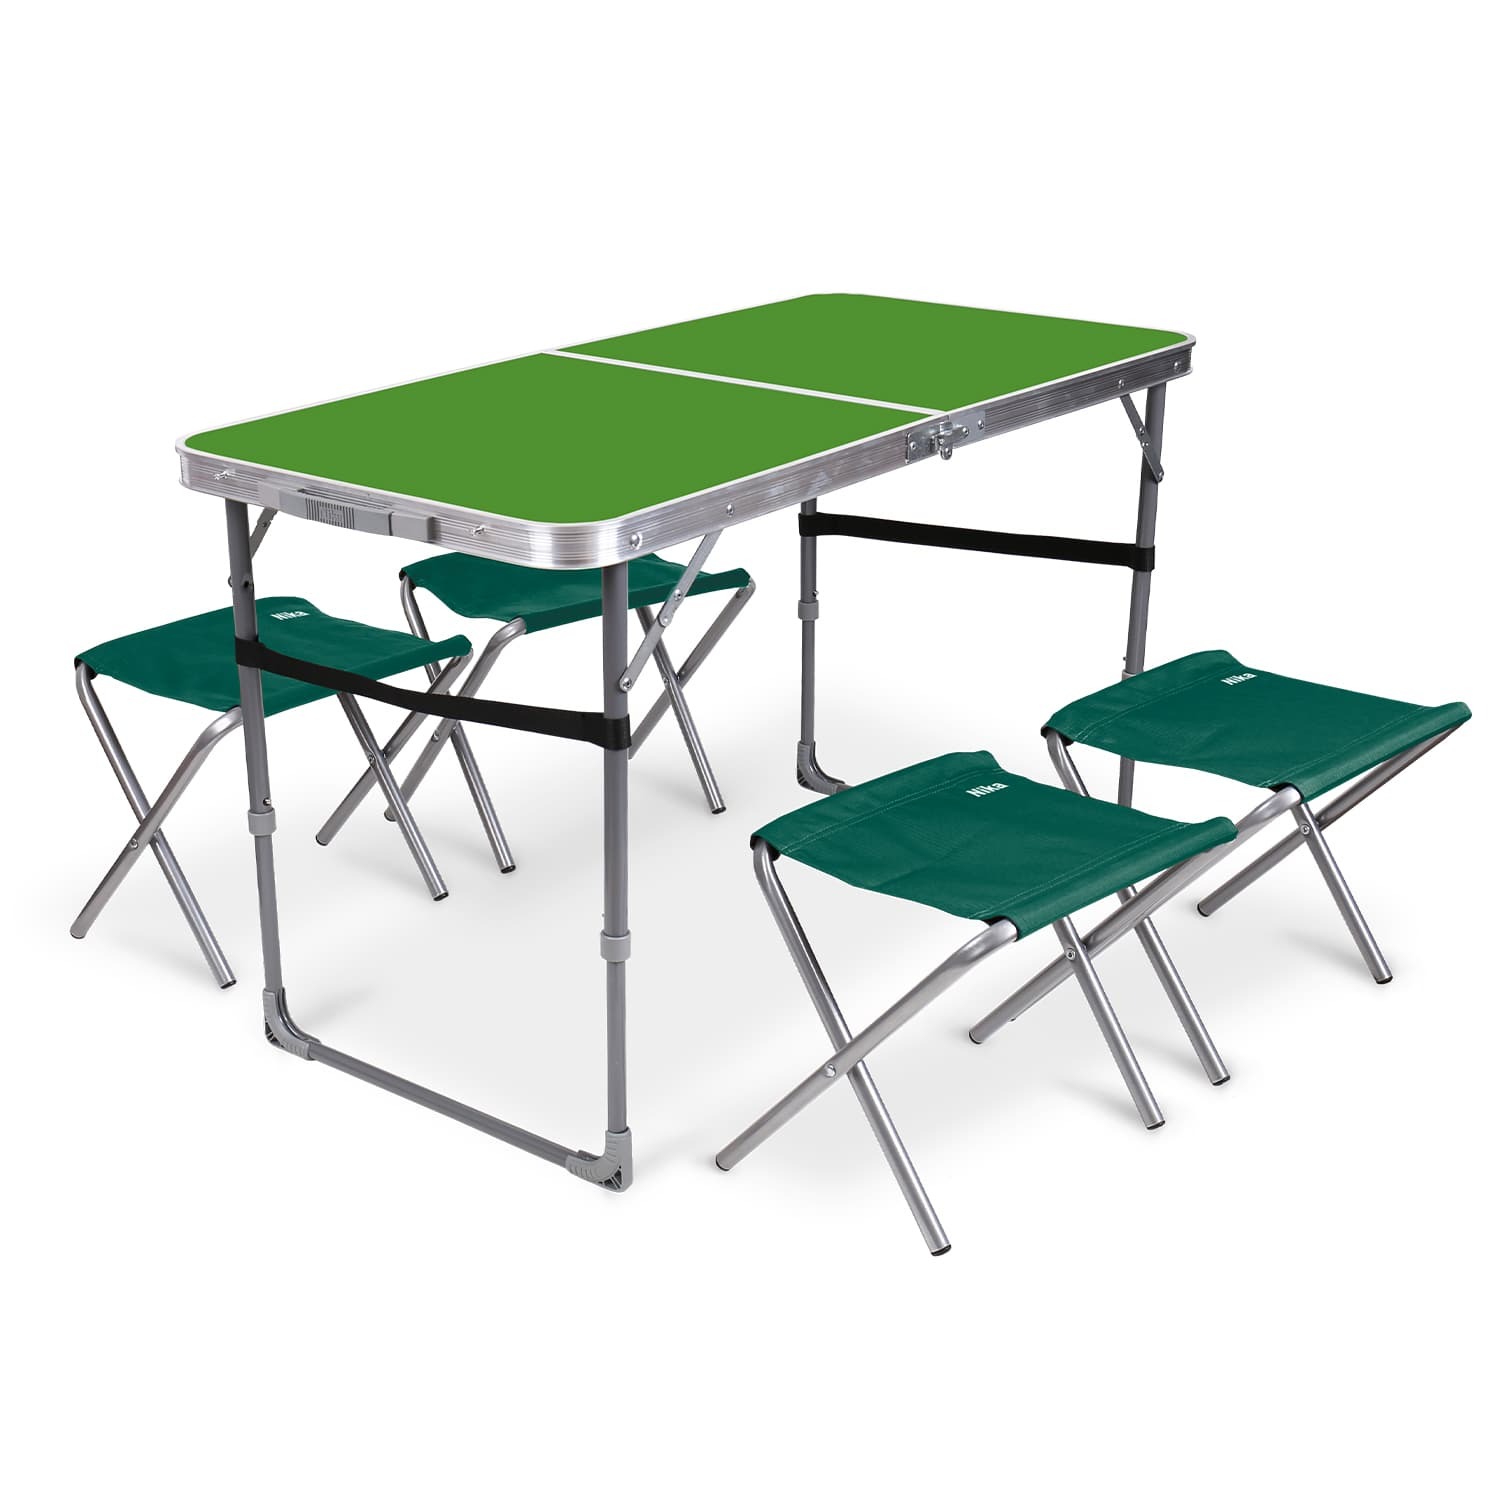 Комплект складной мебели Ника зеленый стол с изумрудными табуретами 5 предметов